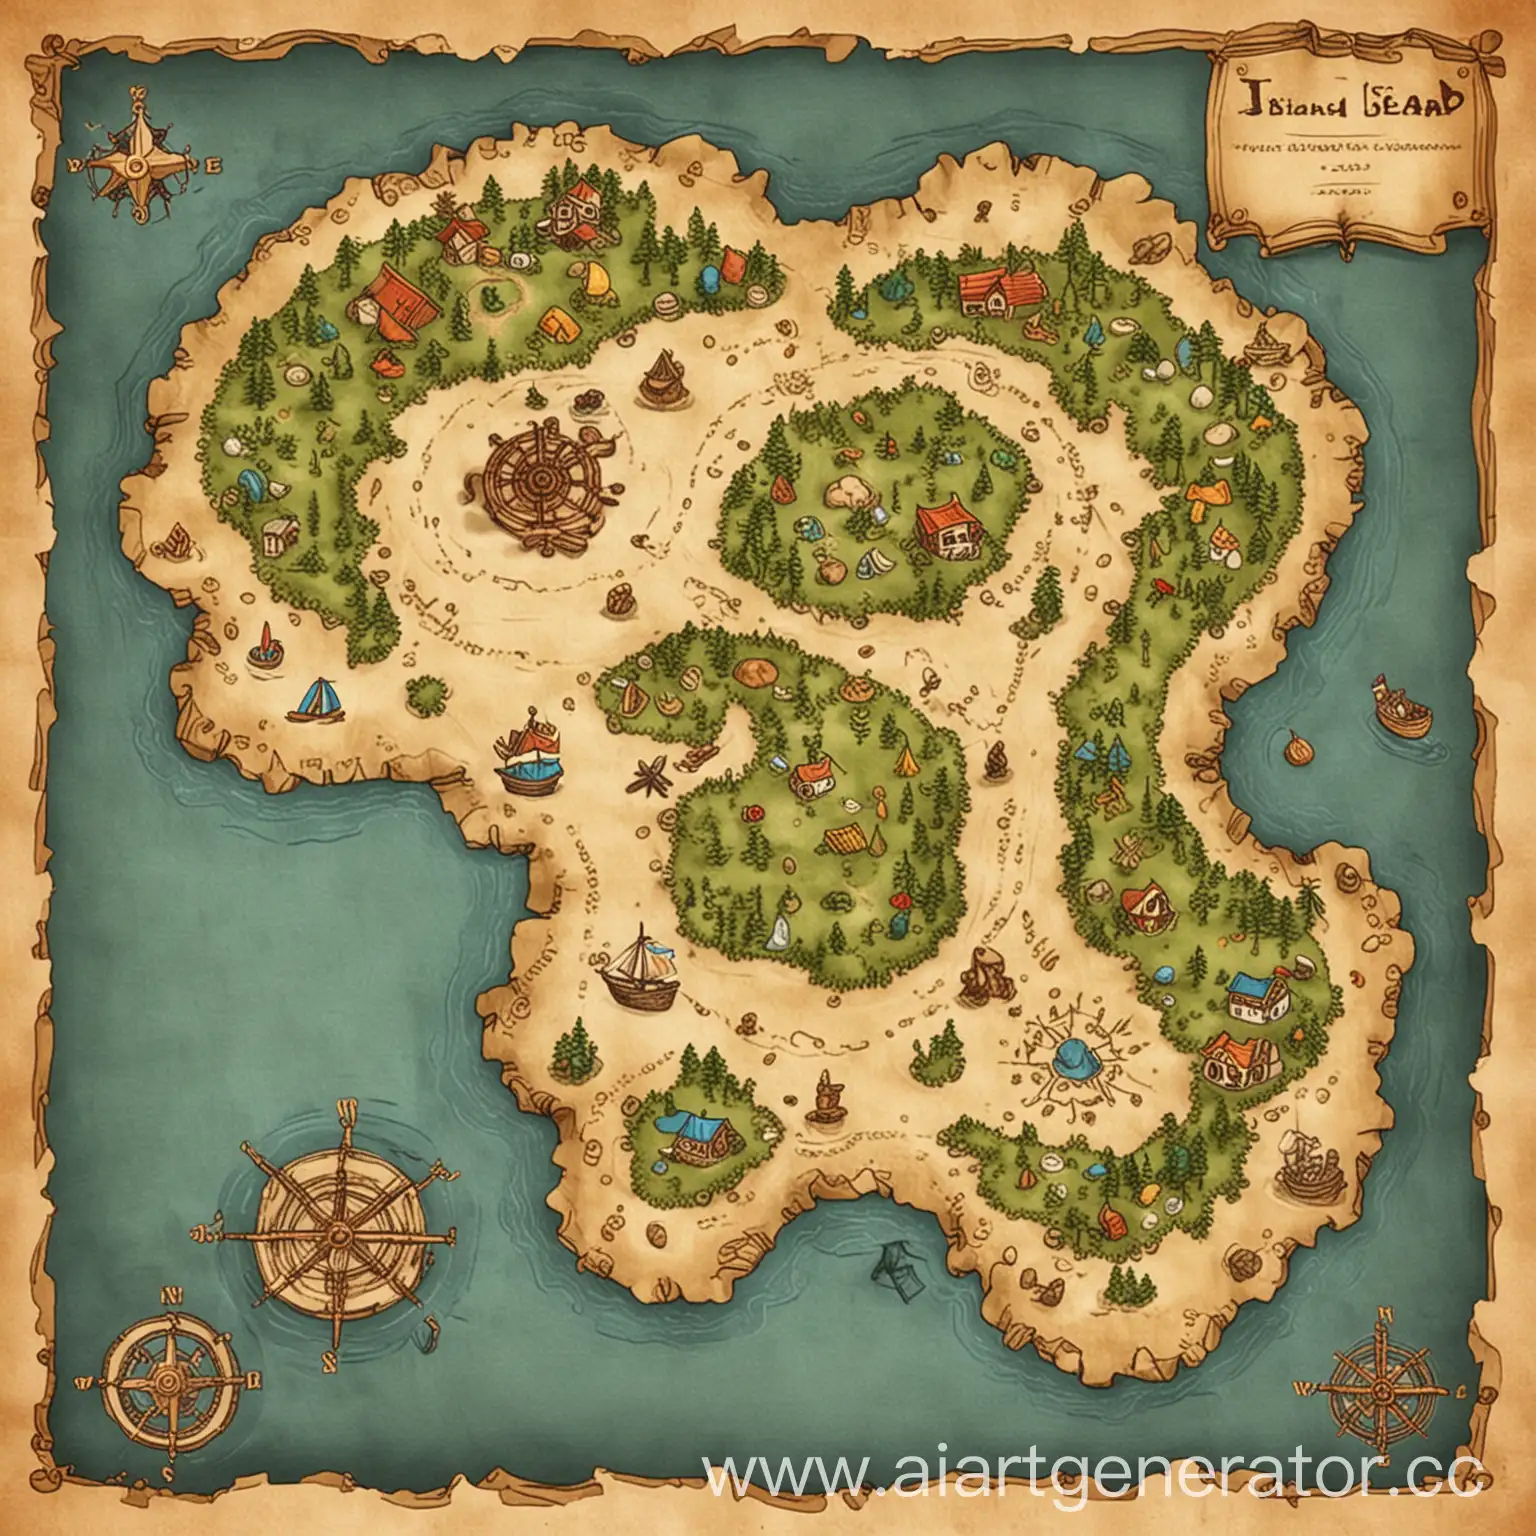 сгенерируй остров вокруг моря - картинка должна быть нарисована, похожая на карту сокровищ, как в играх. 